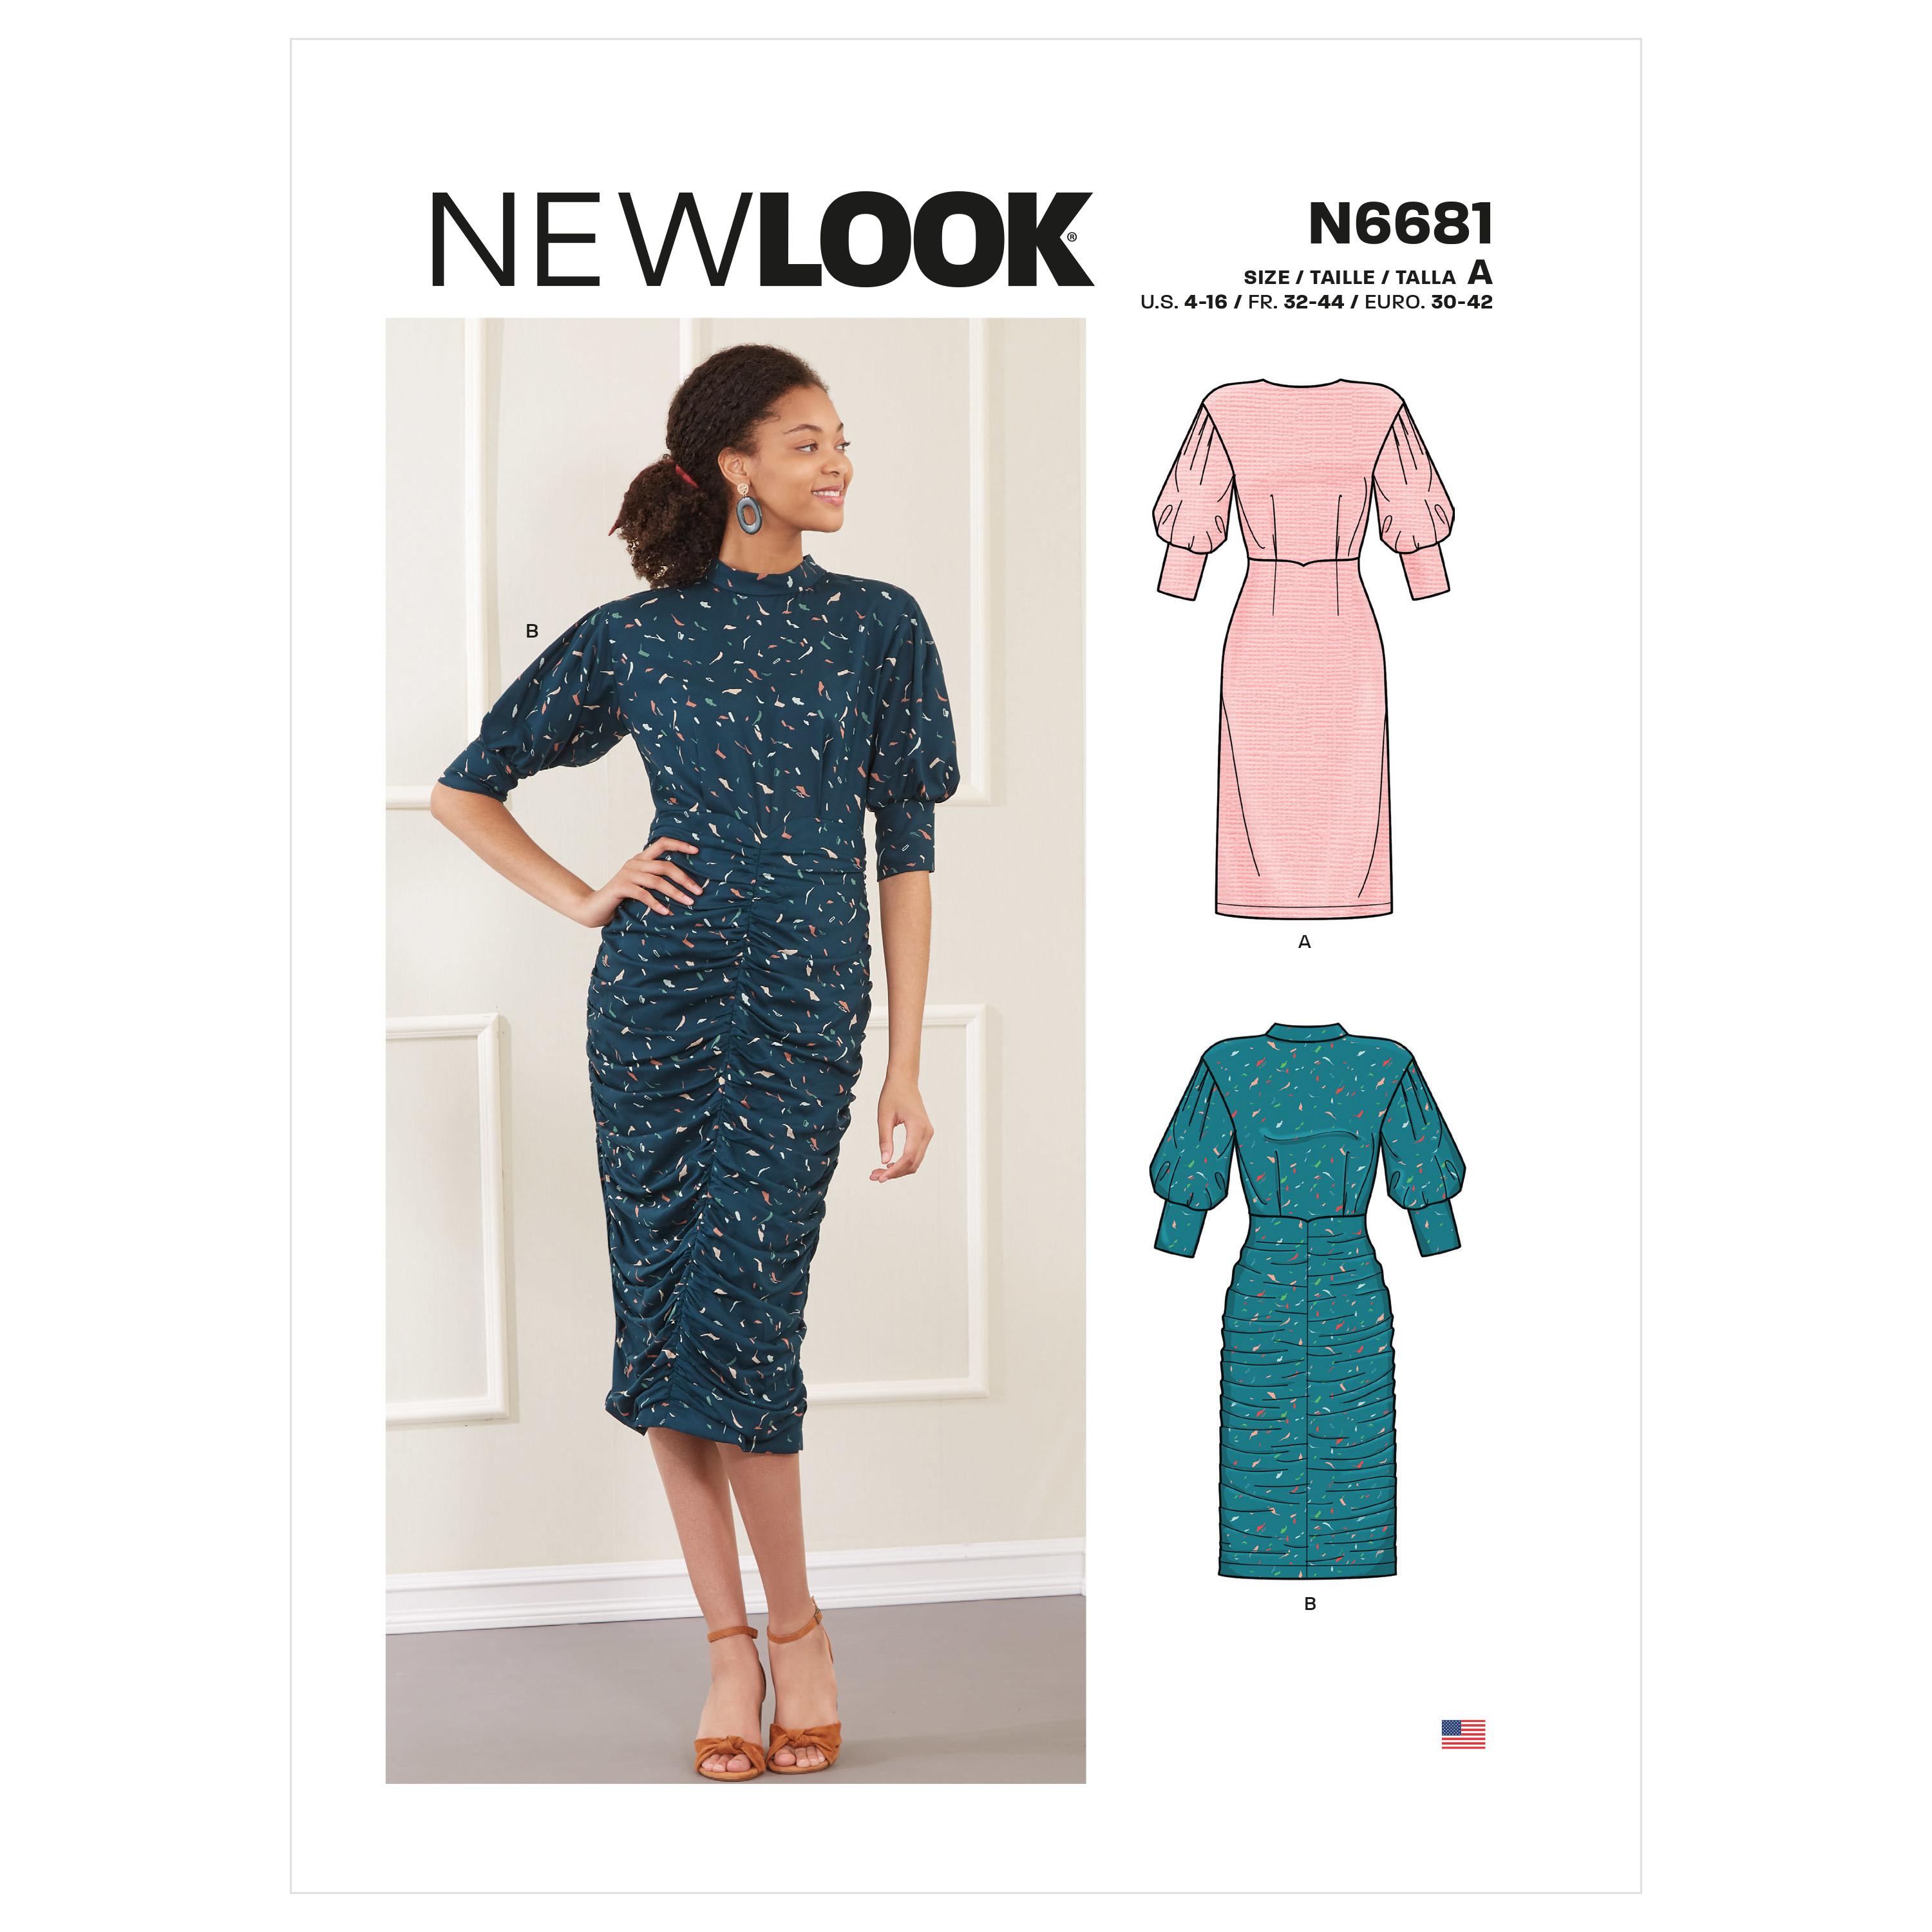 New Look Sewing Pattern N6681 Misses' Dress